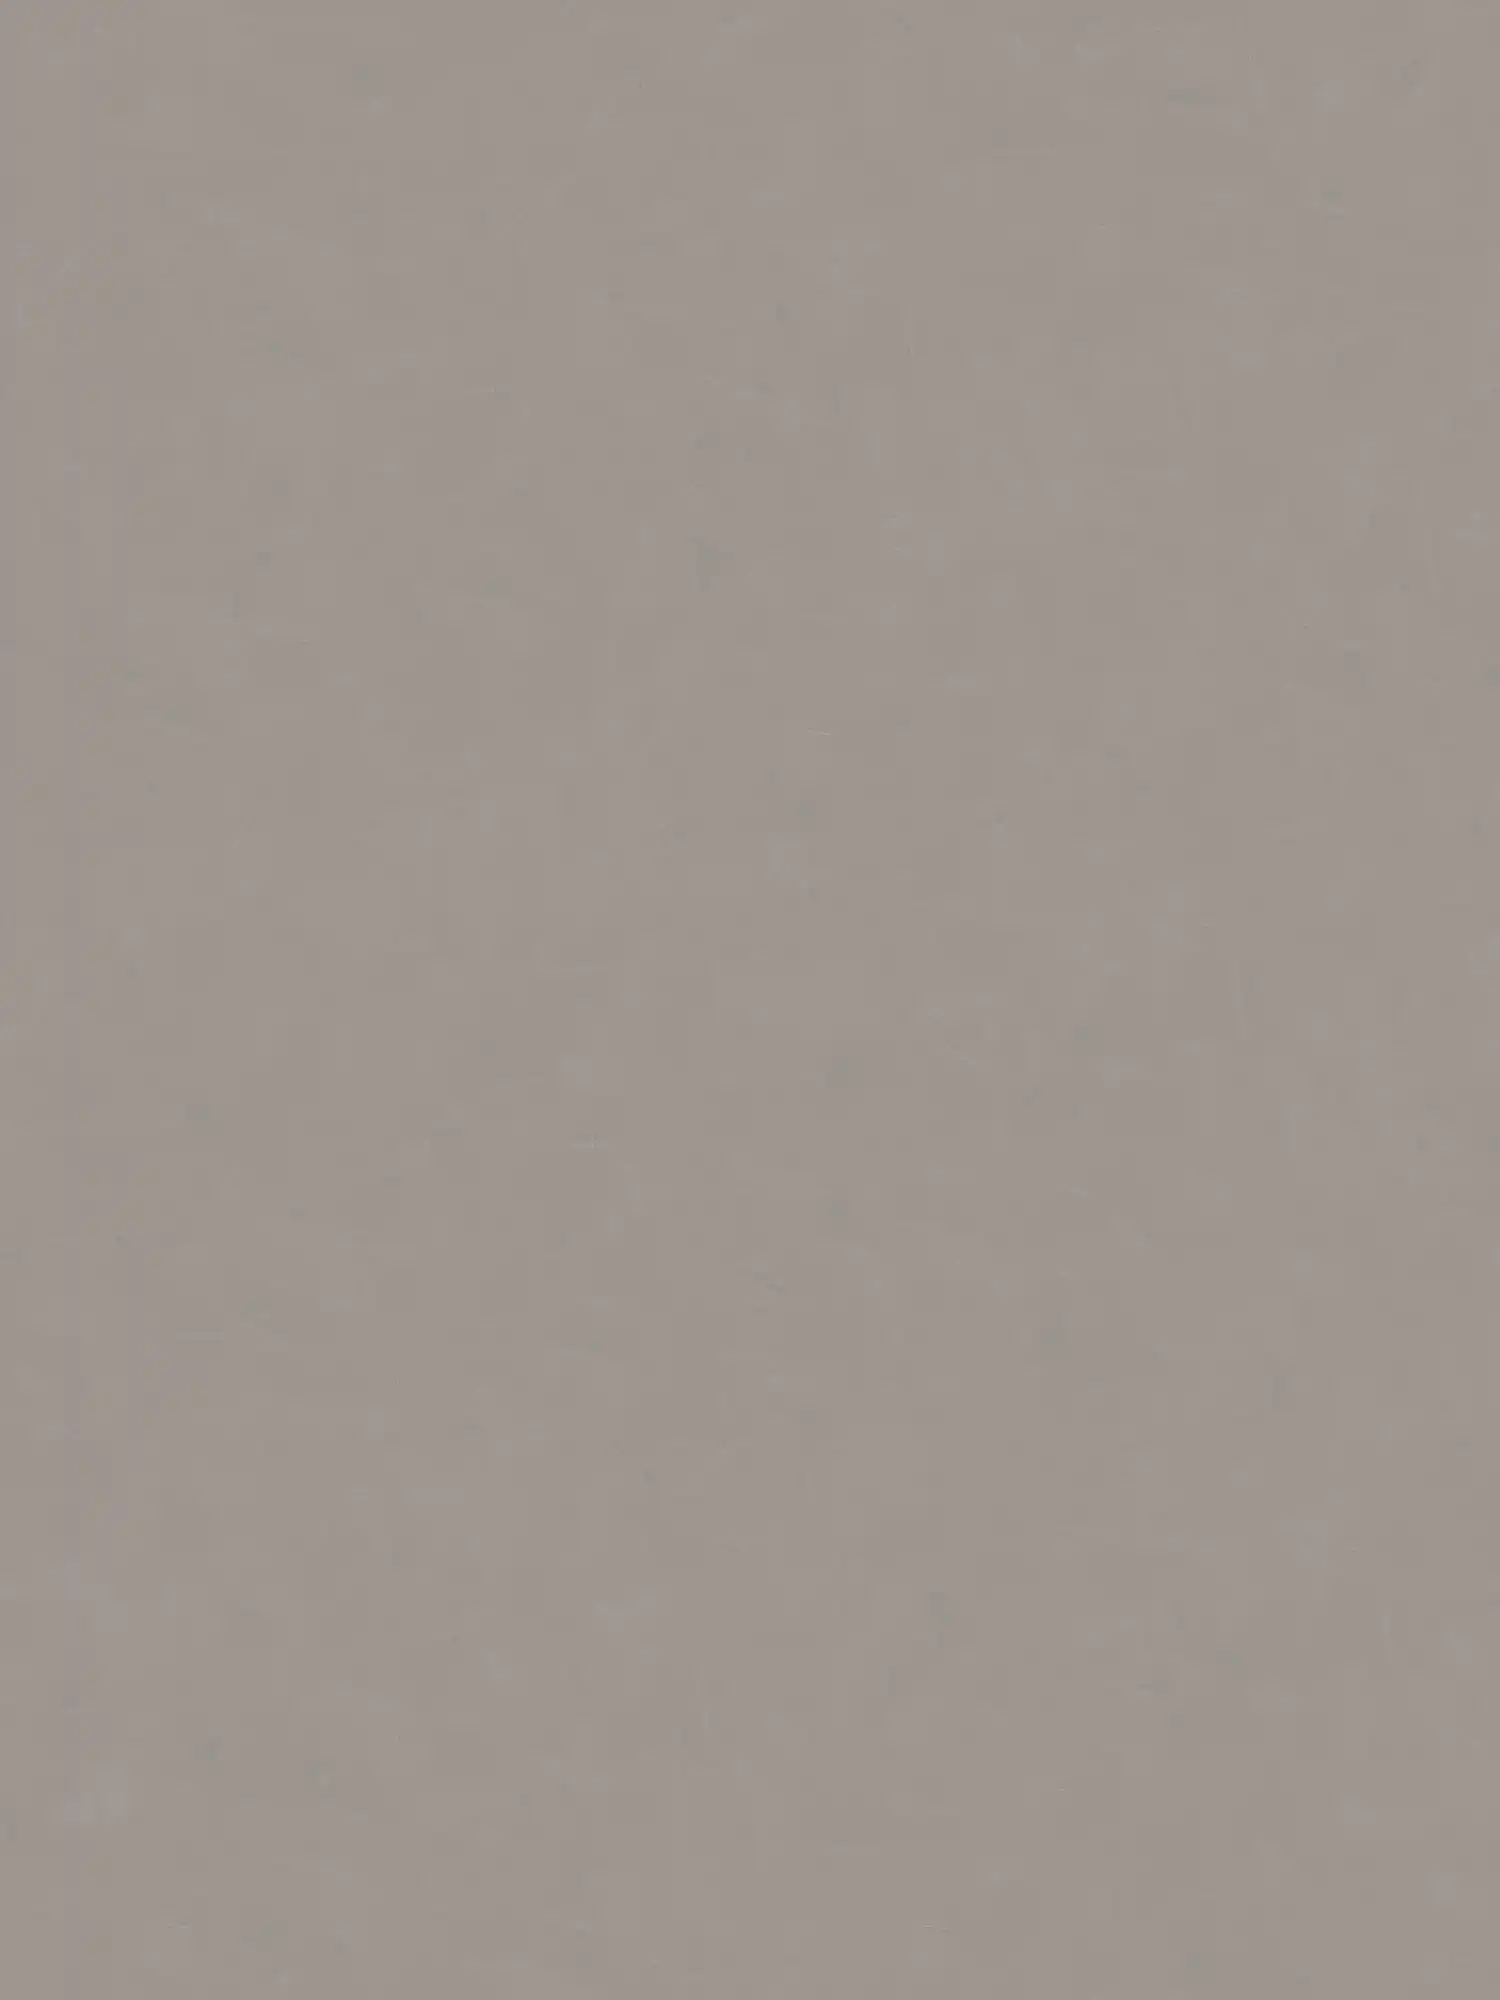 Papel pintado óptico de yeso liso con textura - gris, topo
